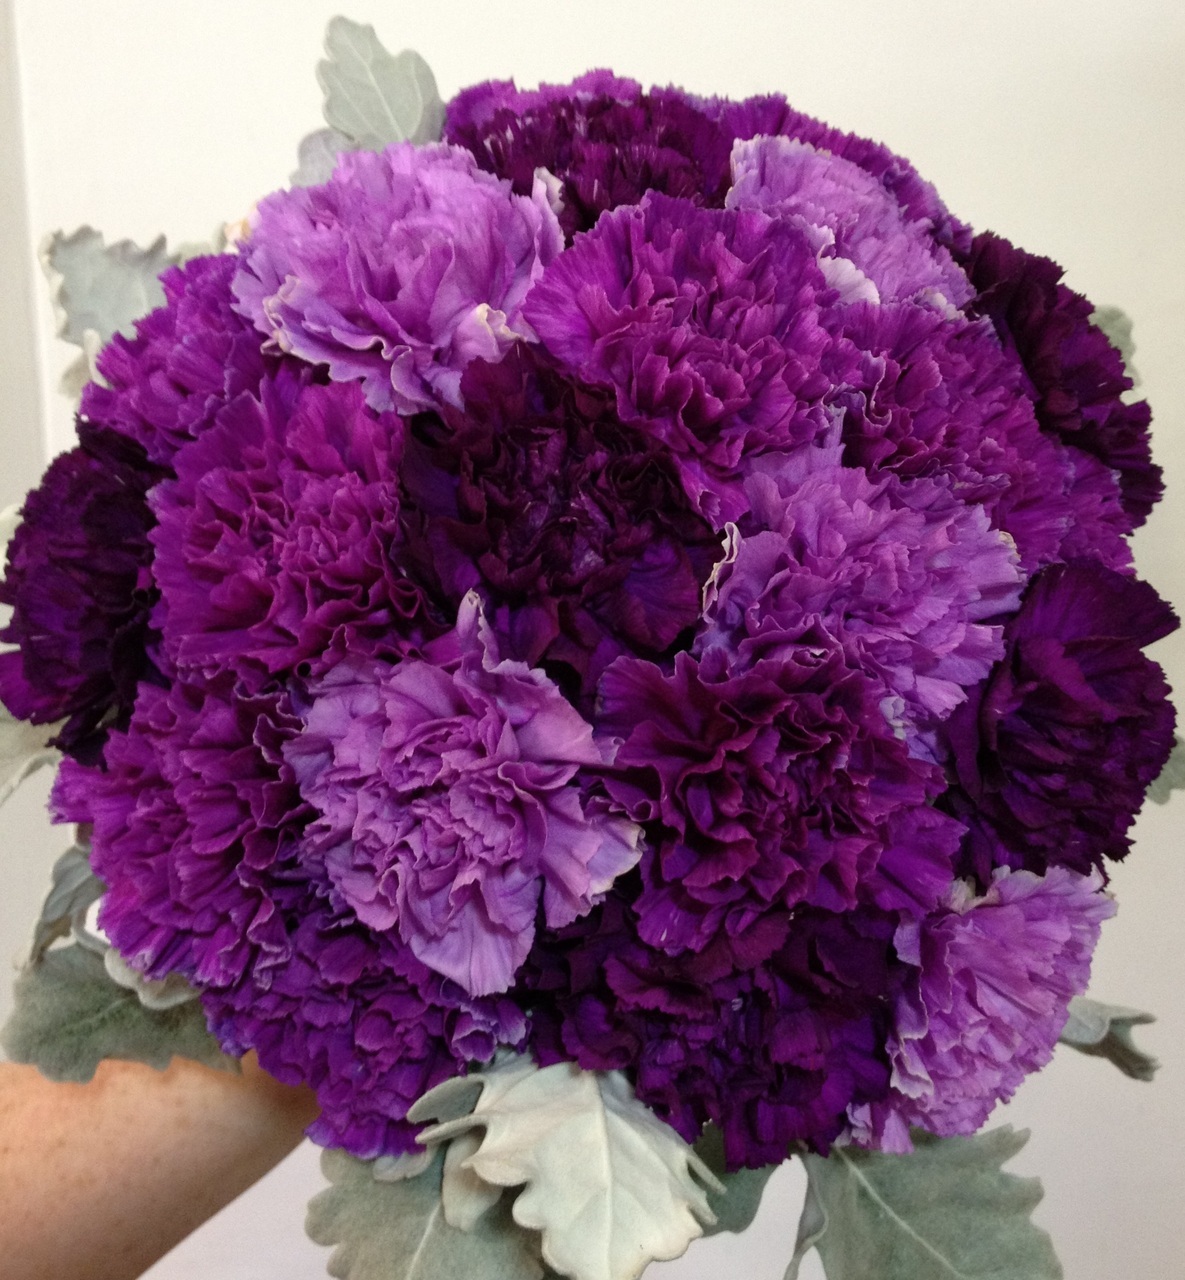 Tổng hợp hình ảnh hoa cẩm chướng tím đẹp nhất - [Kích thước hình ảnh: 1185x1280 px]